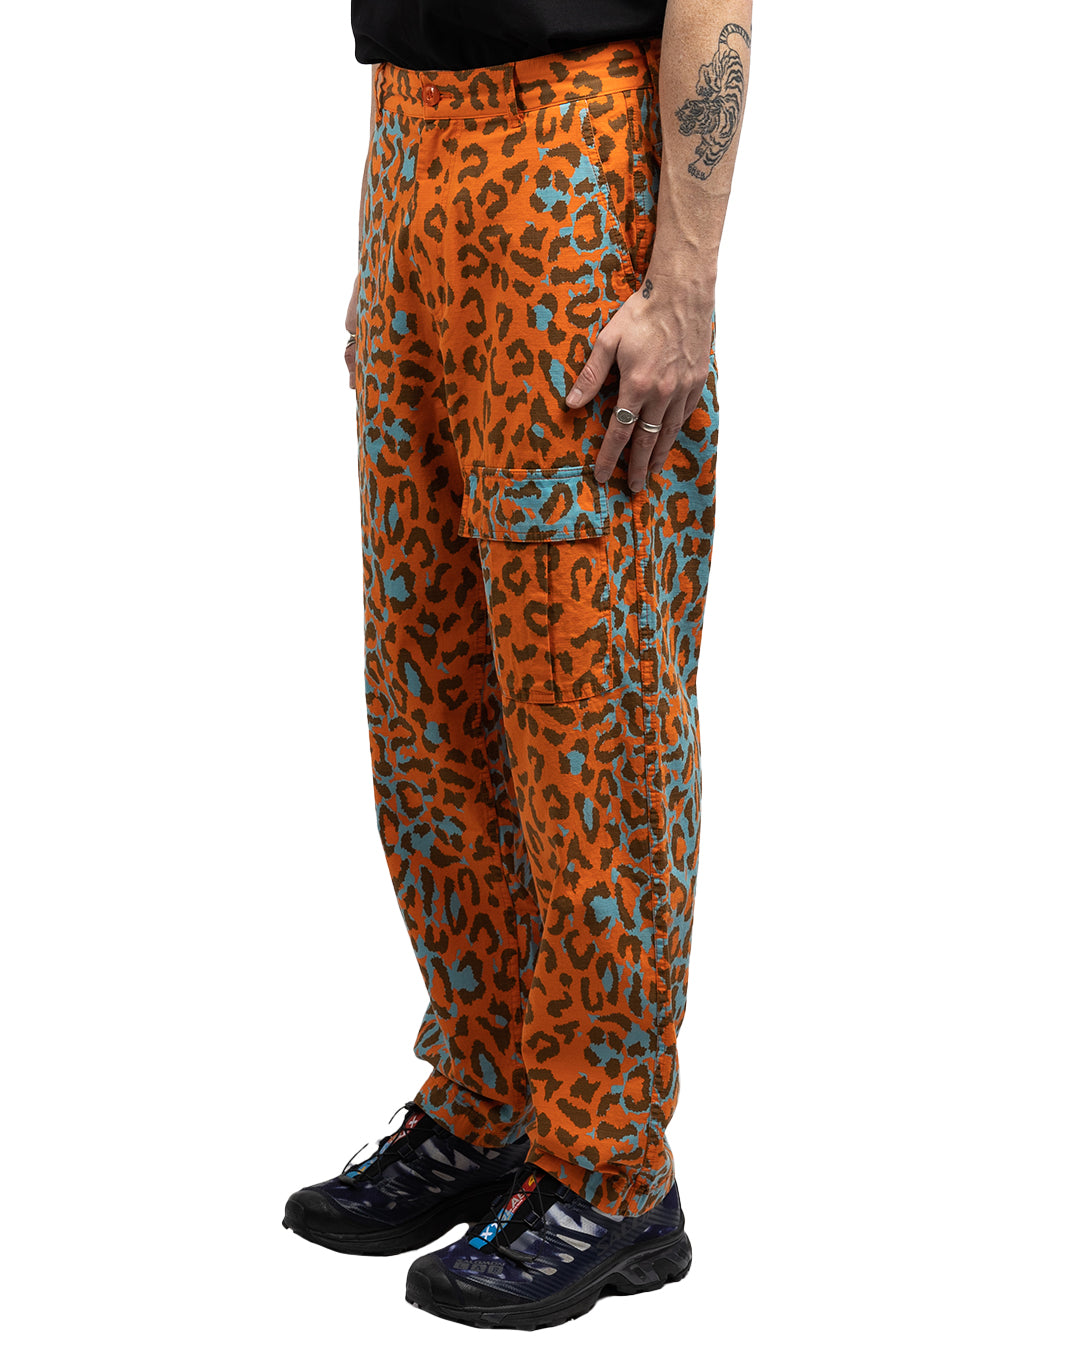 Awake NY Military Cargo Pants Printed Leopard